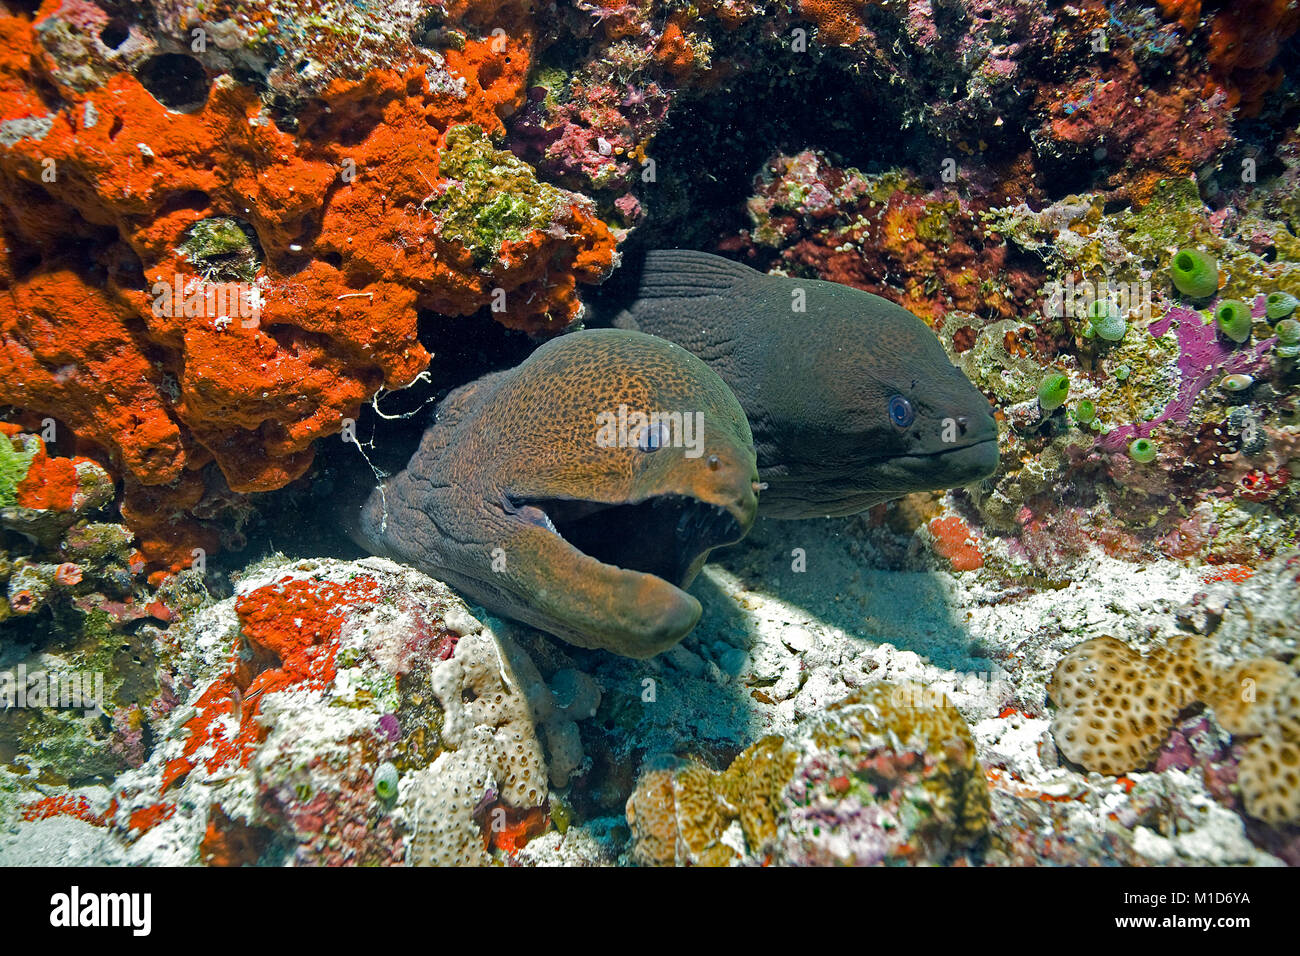 Due murene giganti (Gymnothorax javanicus) vivere insieme e barriera corallina a isole delle Maldive, Oceano Indiano, Asia Foto Stock